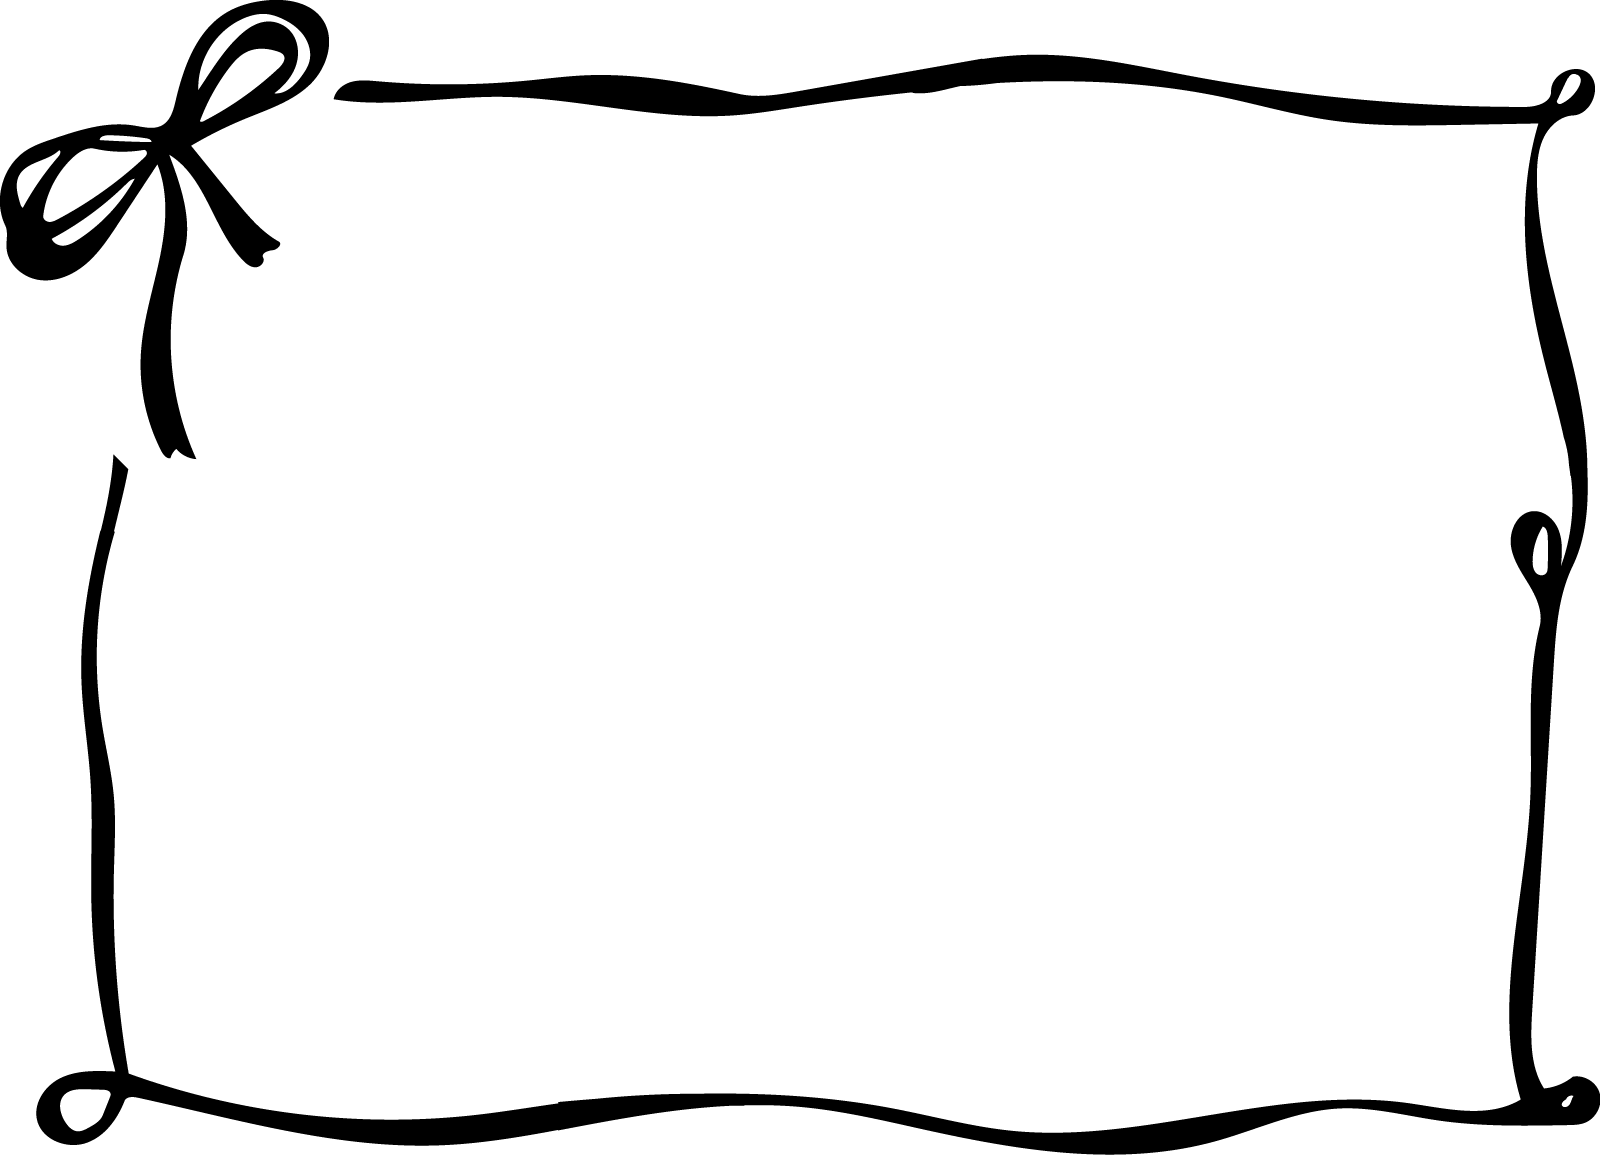 リボンのフレーム枠背景イラスト画像素材 白黒 モノクロ